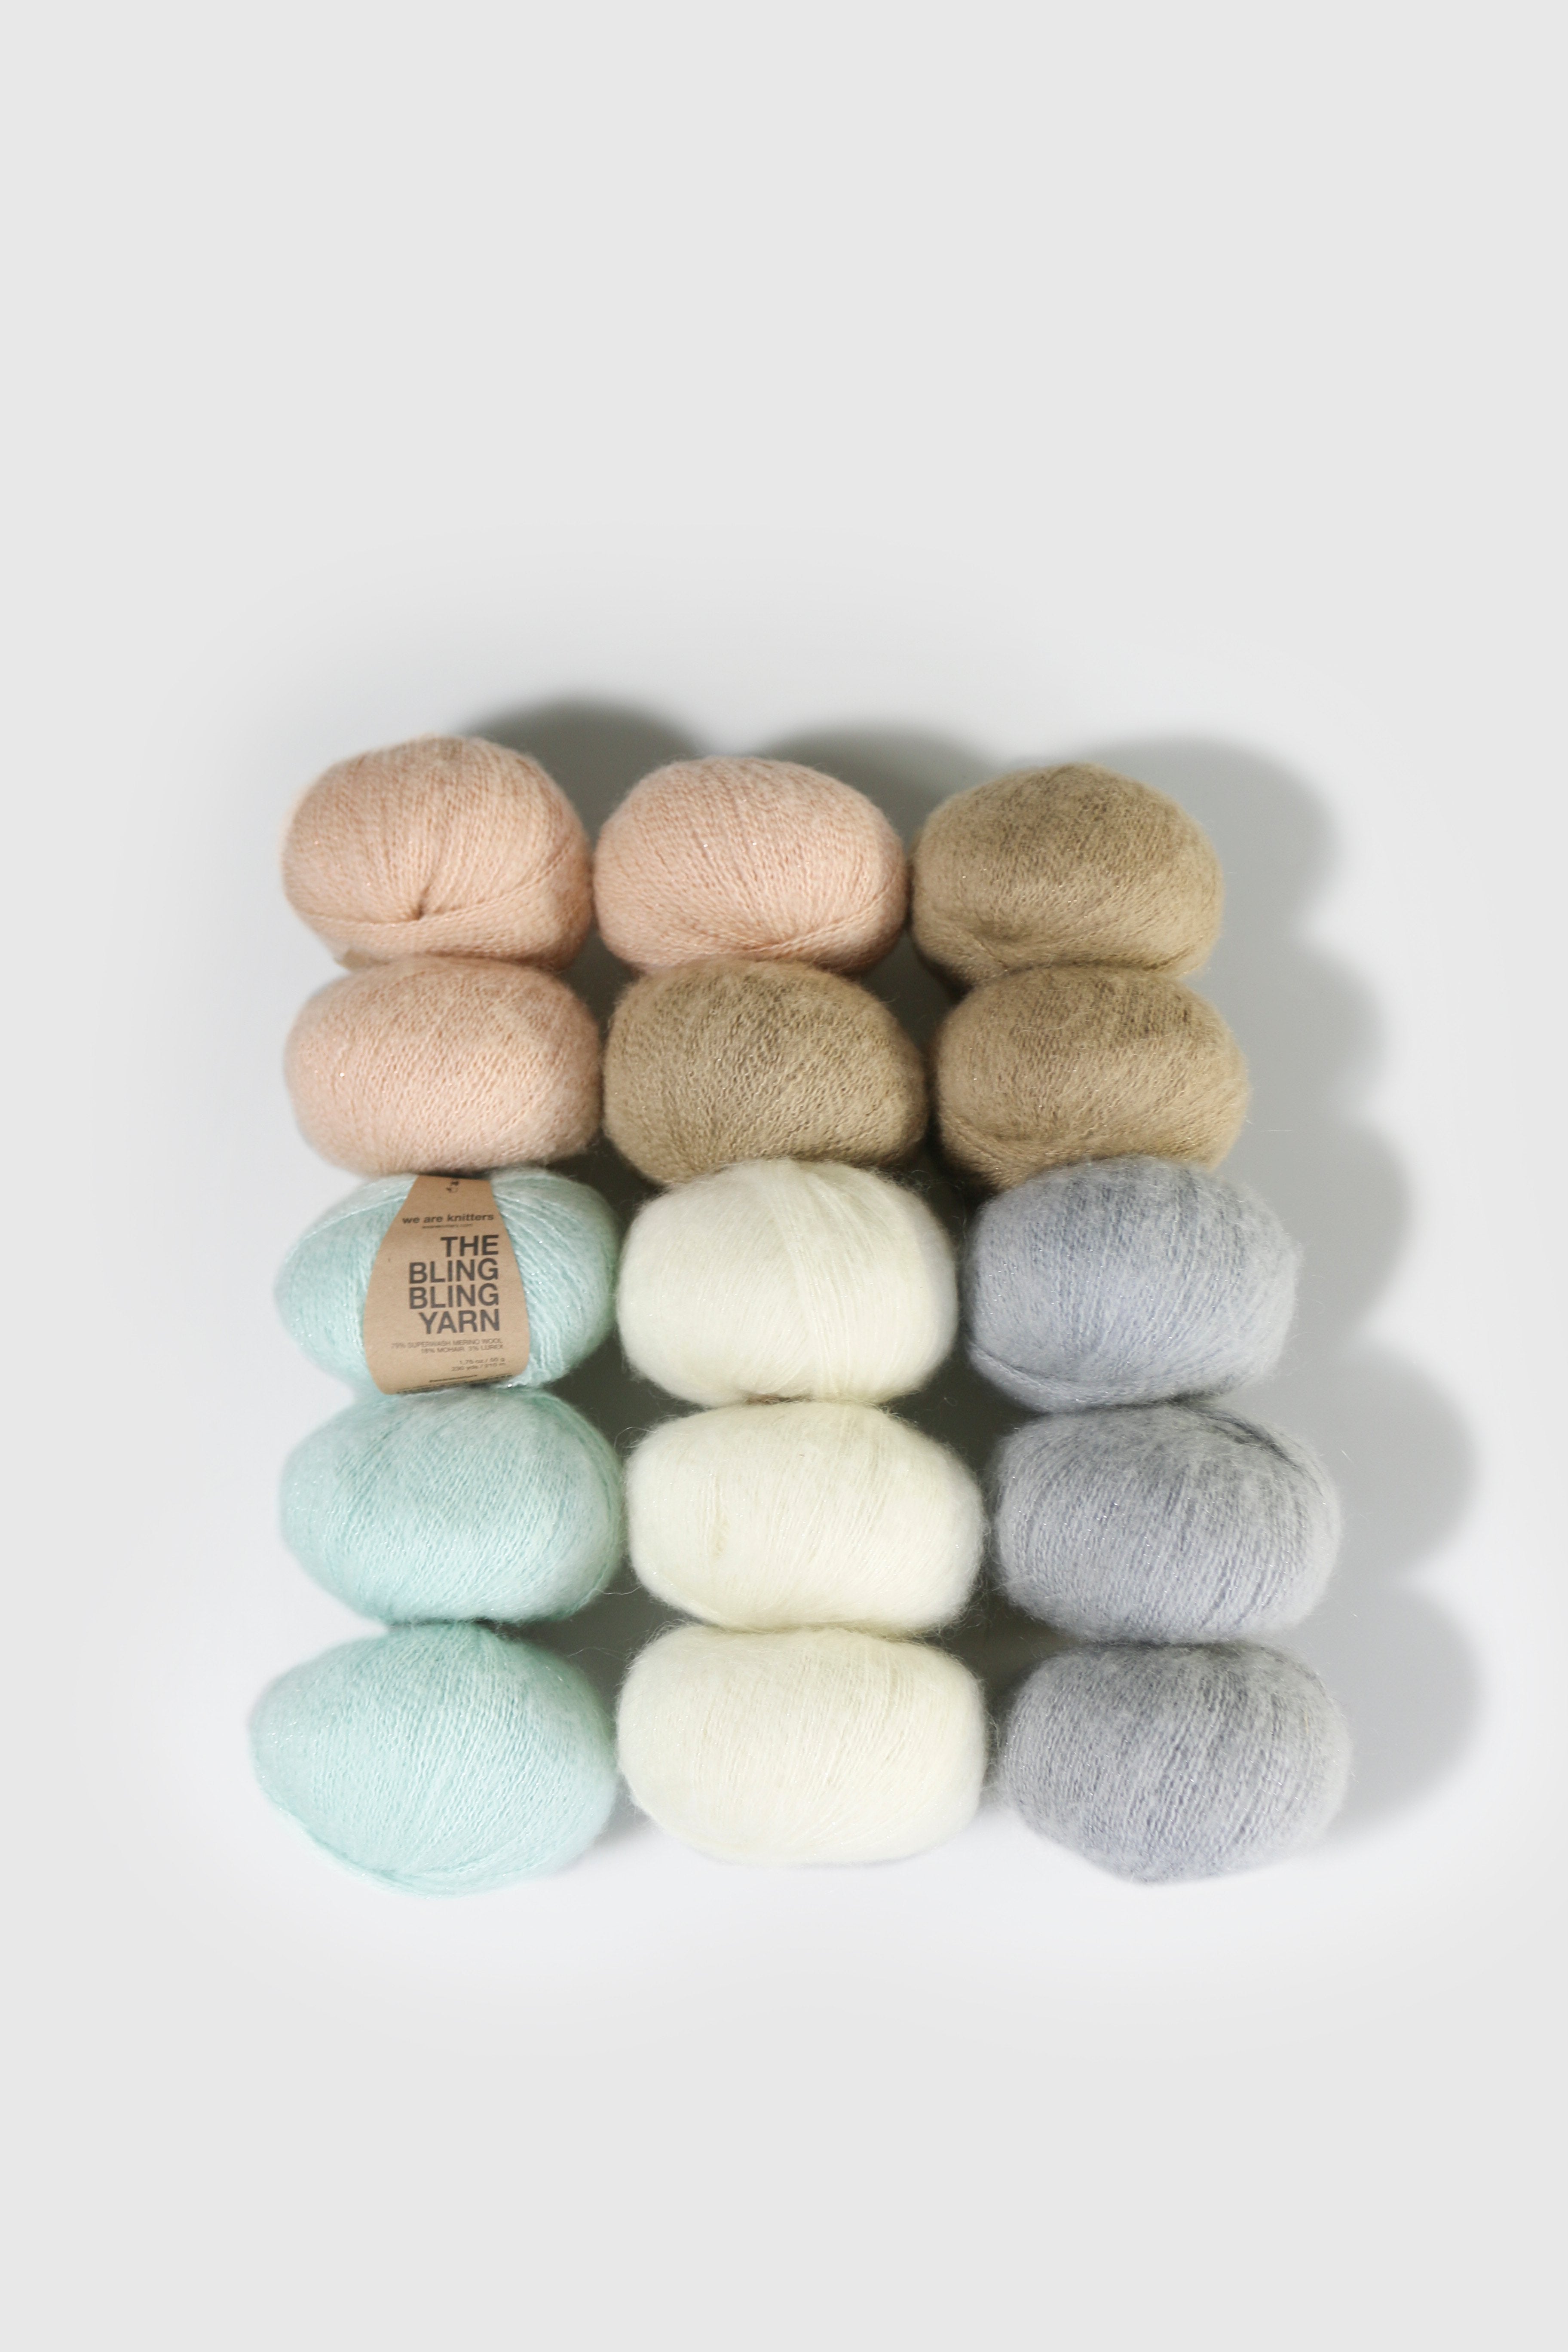 The Wool Forest Green – weareknitters